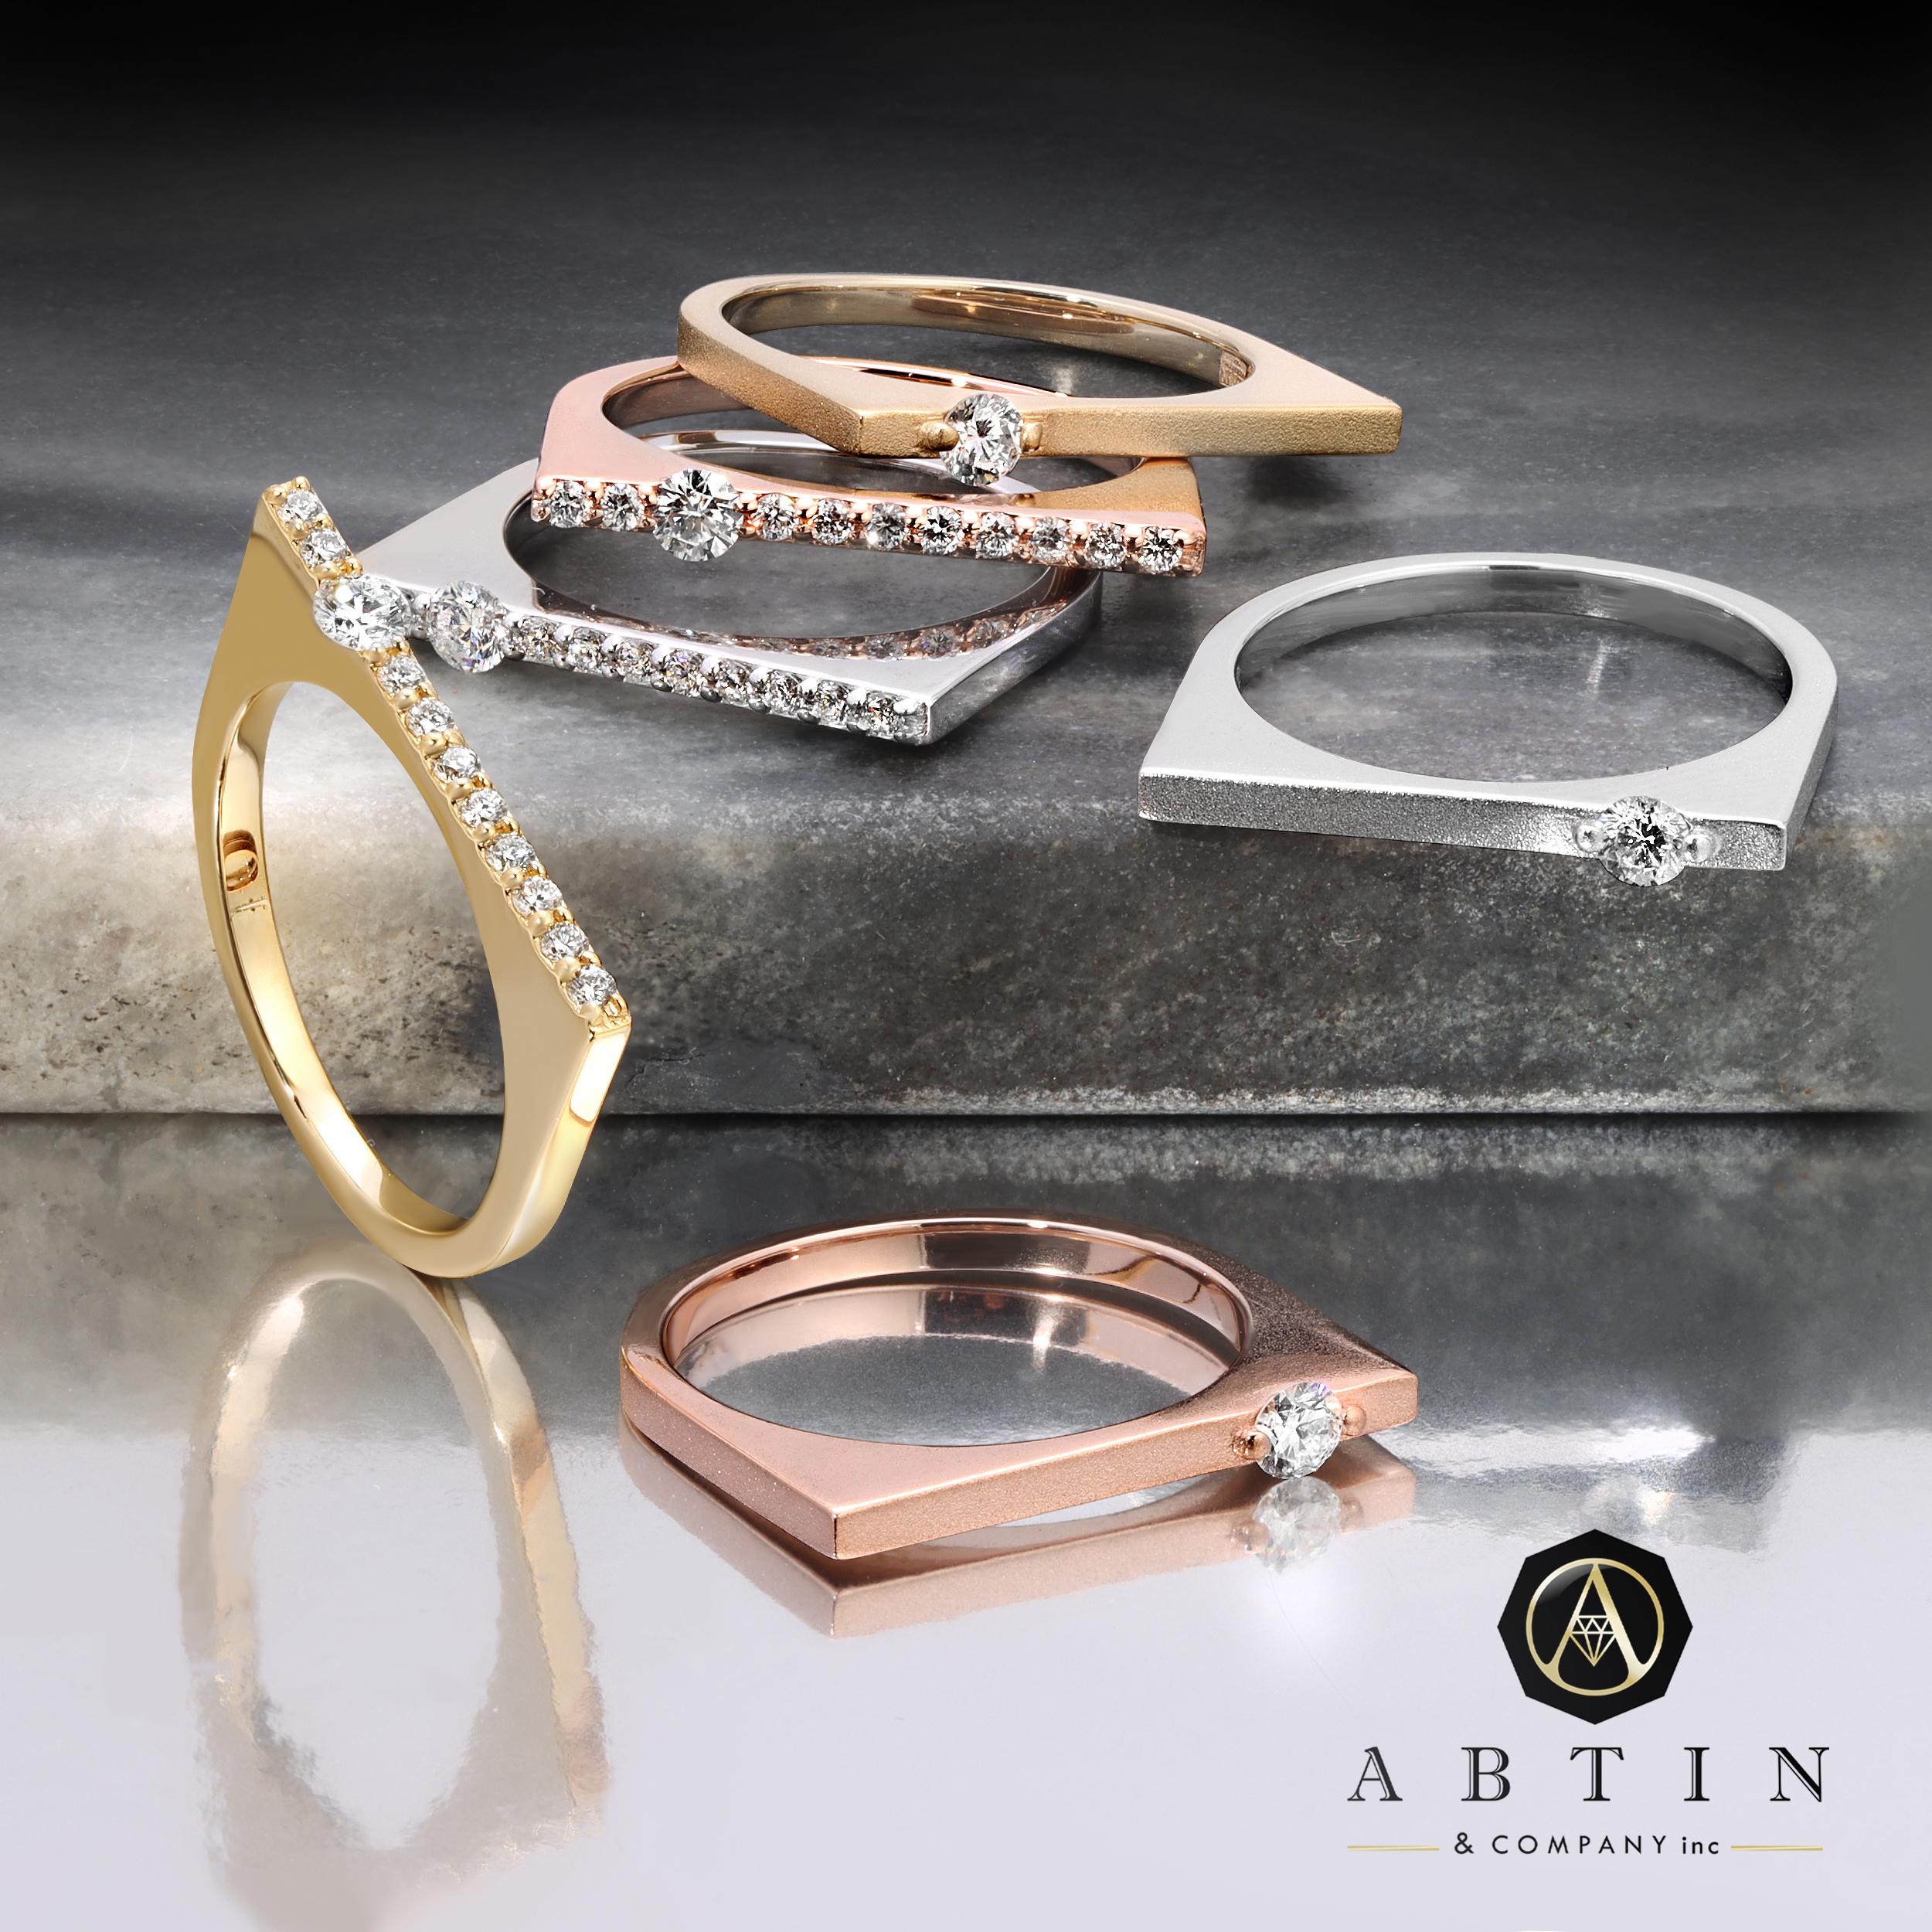 Ein zeitloser und klassischer Ring aus massivem 14-karätigem Gold mit einem zarten runden Diamanten auf einem polierten Band. Ideal, um ihn allein zu tragen oder mit anderen Ringen zu kombinieren. Erhältlich in Gelb-, Weiß- oder Roségold.

Gold